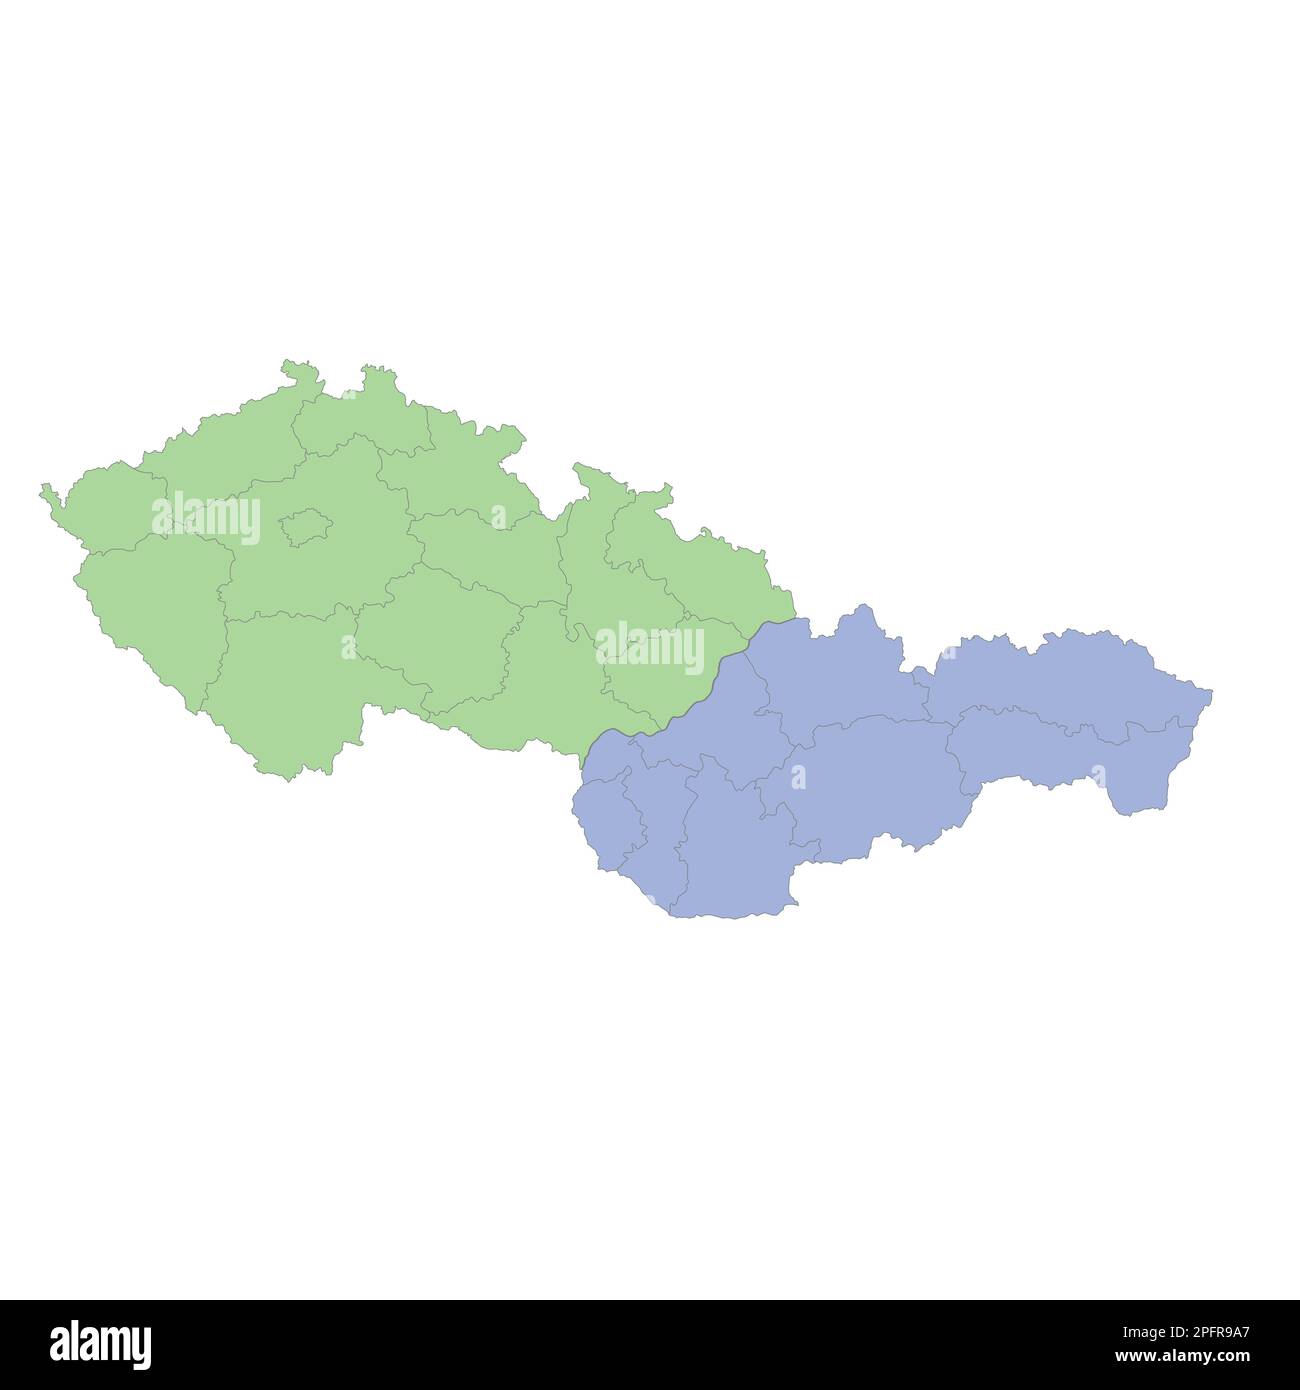 Mappa politica di alta qualità della Repubblica Ceca e della Slovacchia con i confini delle regioni o delle province. Illustrazione vettoriale Illustrazione Vettoriale